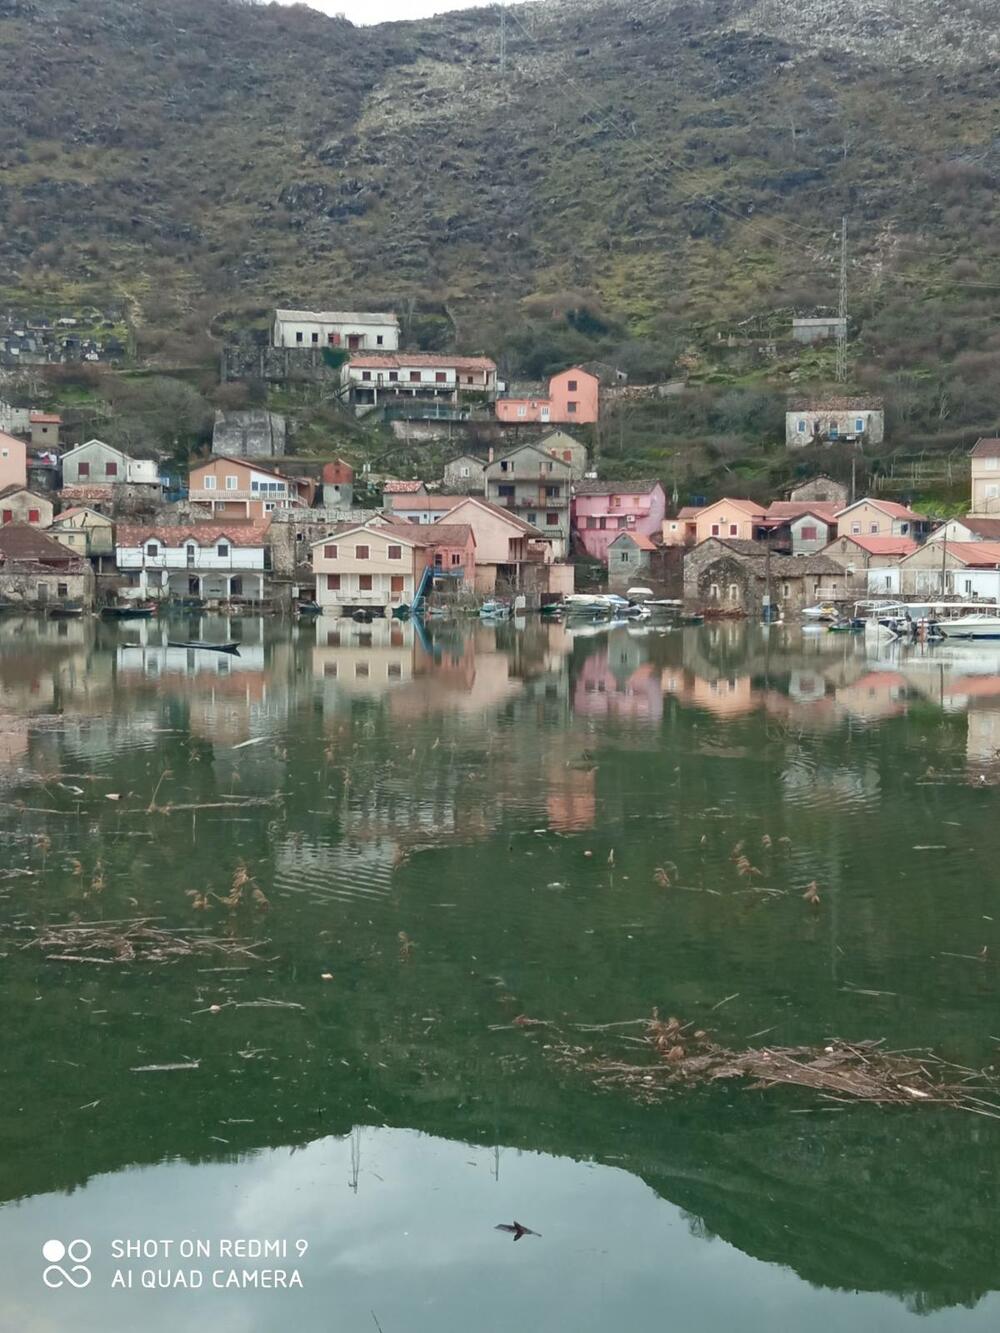 Lake Skadar floods